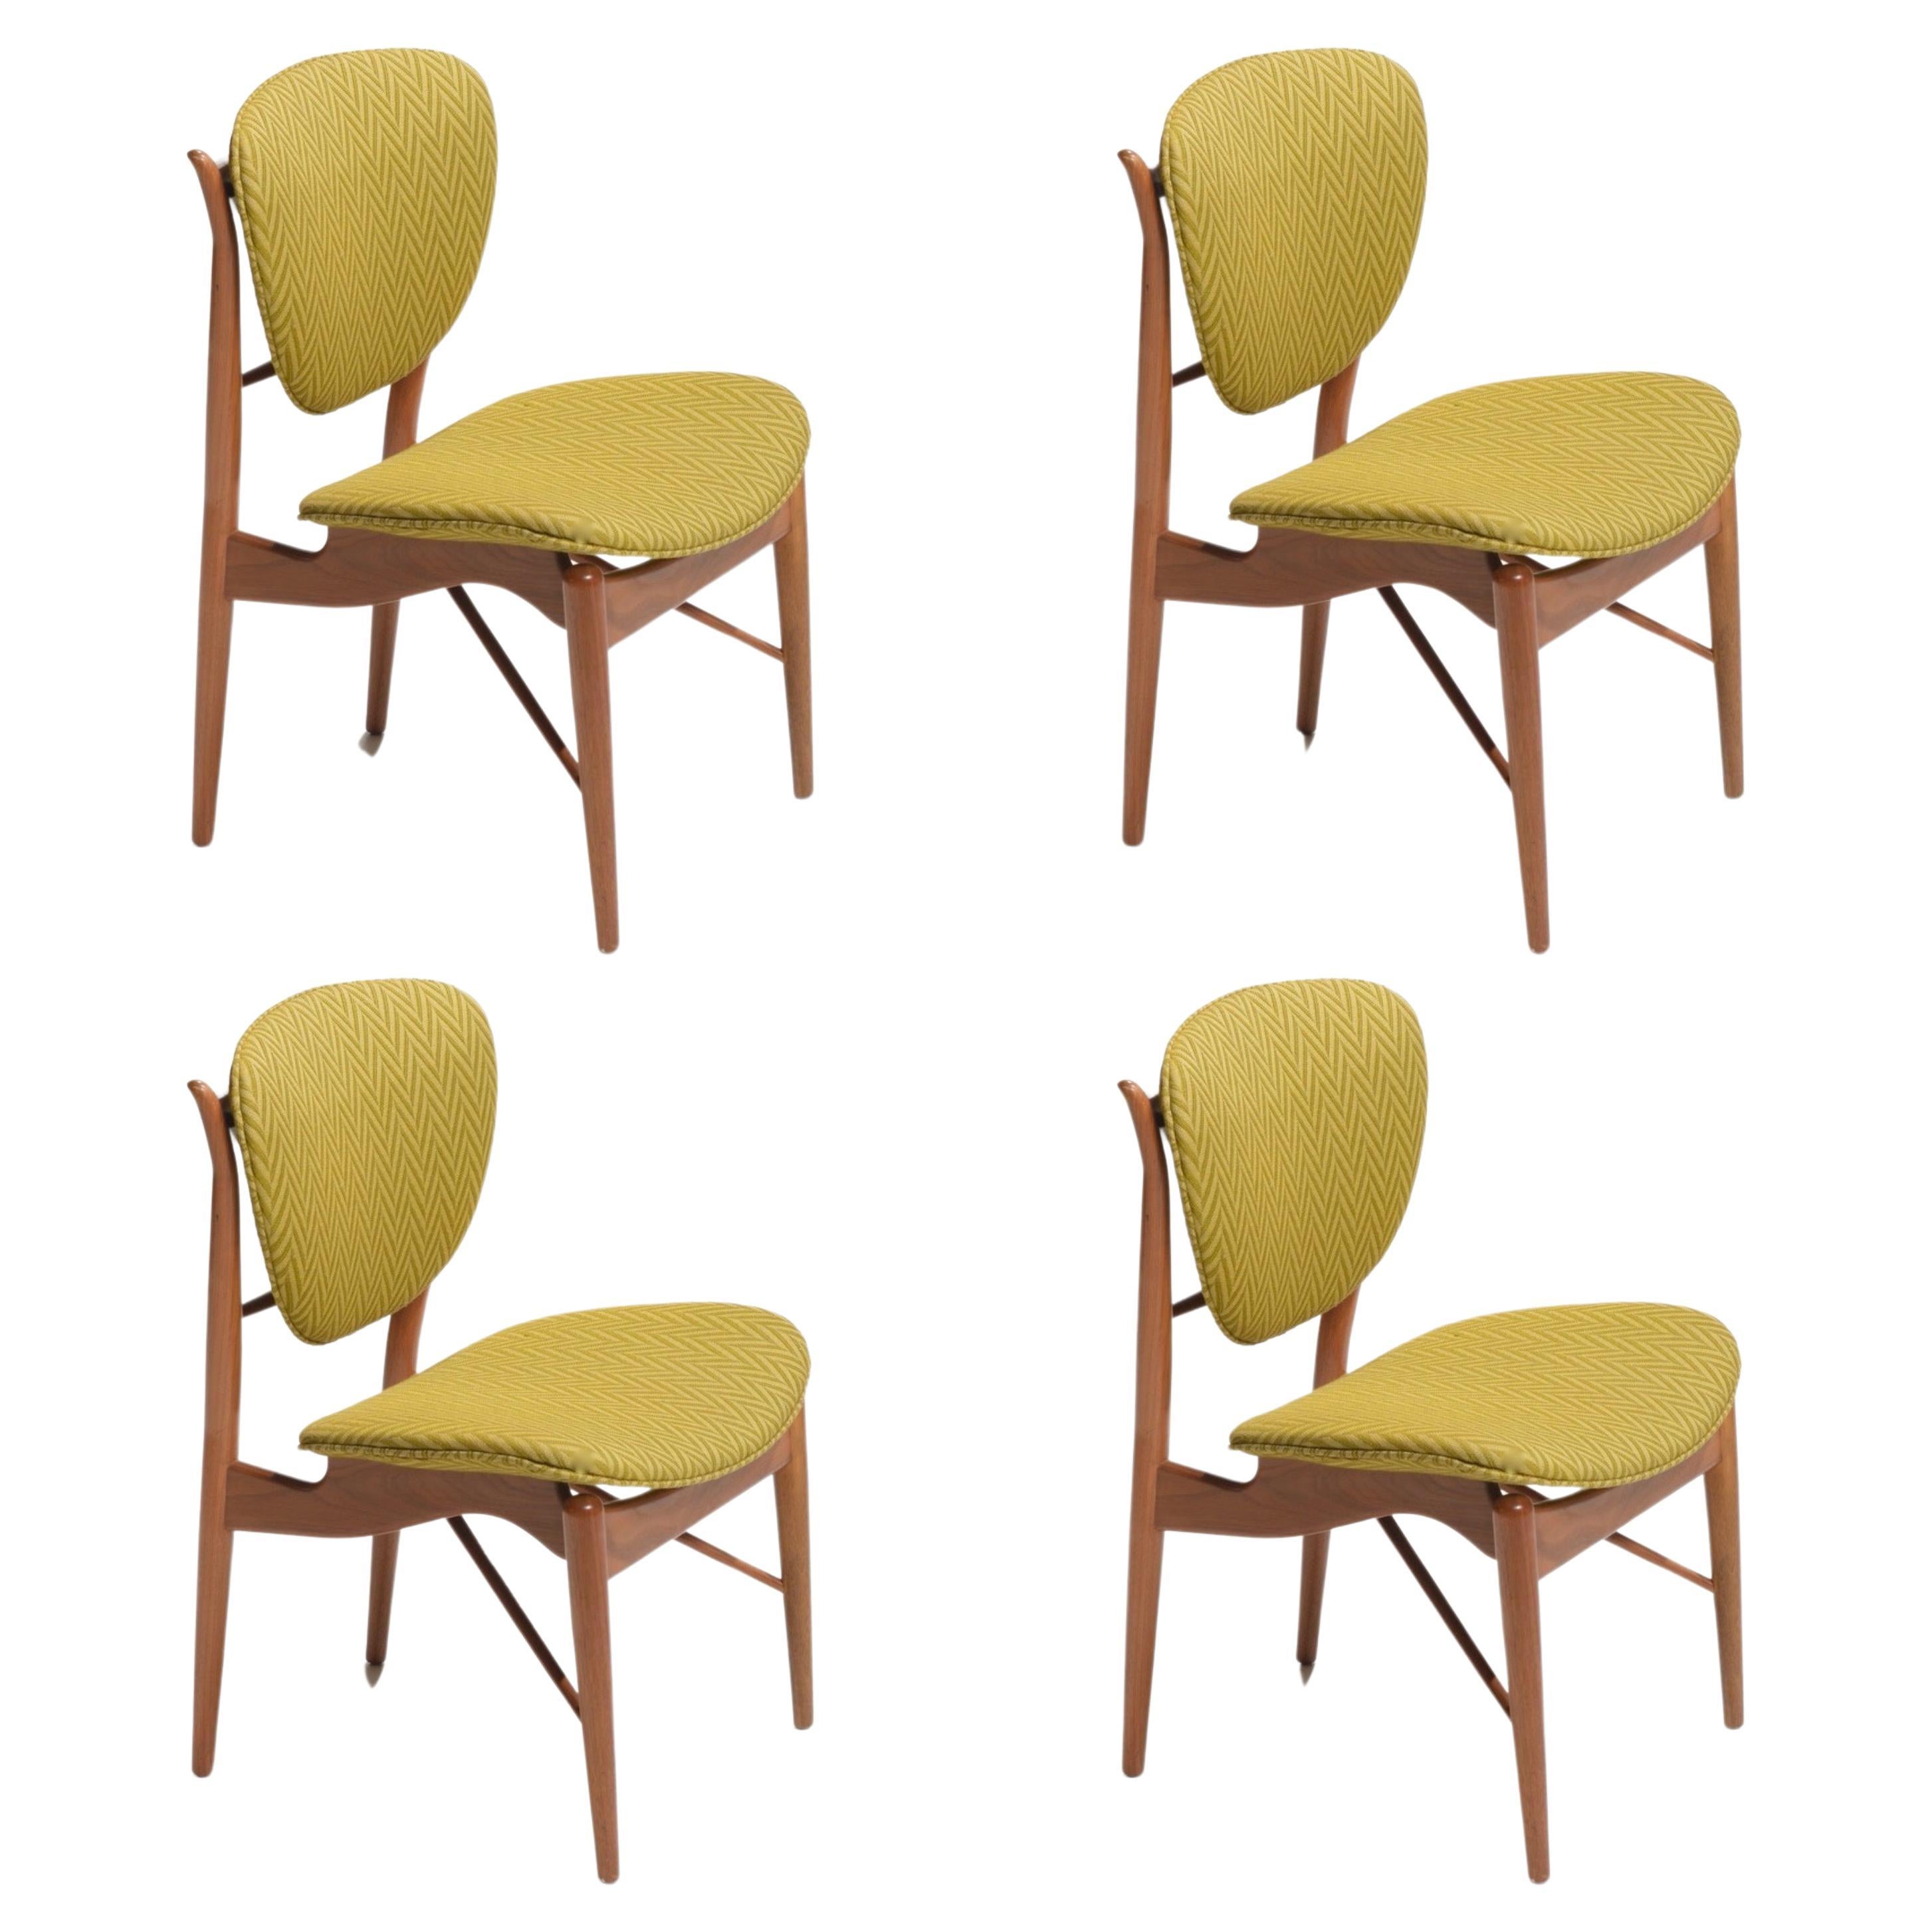 Finn Juhl 51 Chairs by Baker, 1952